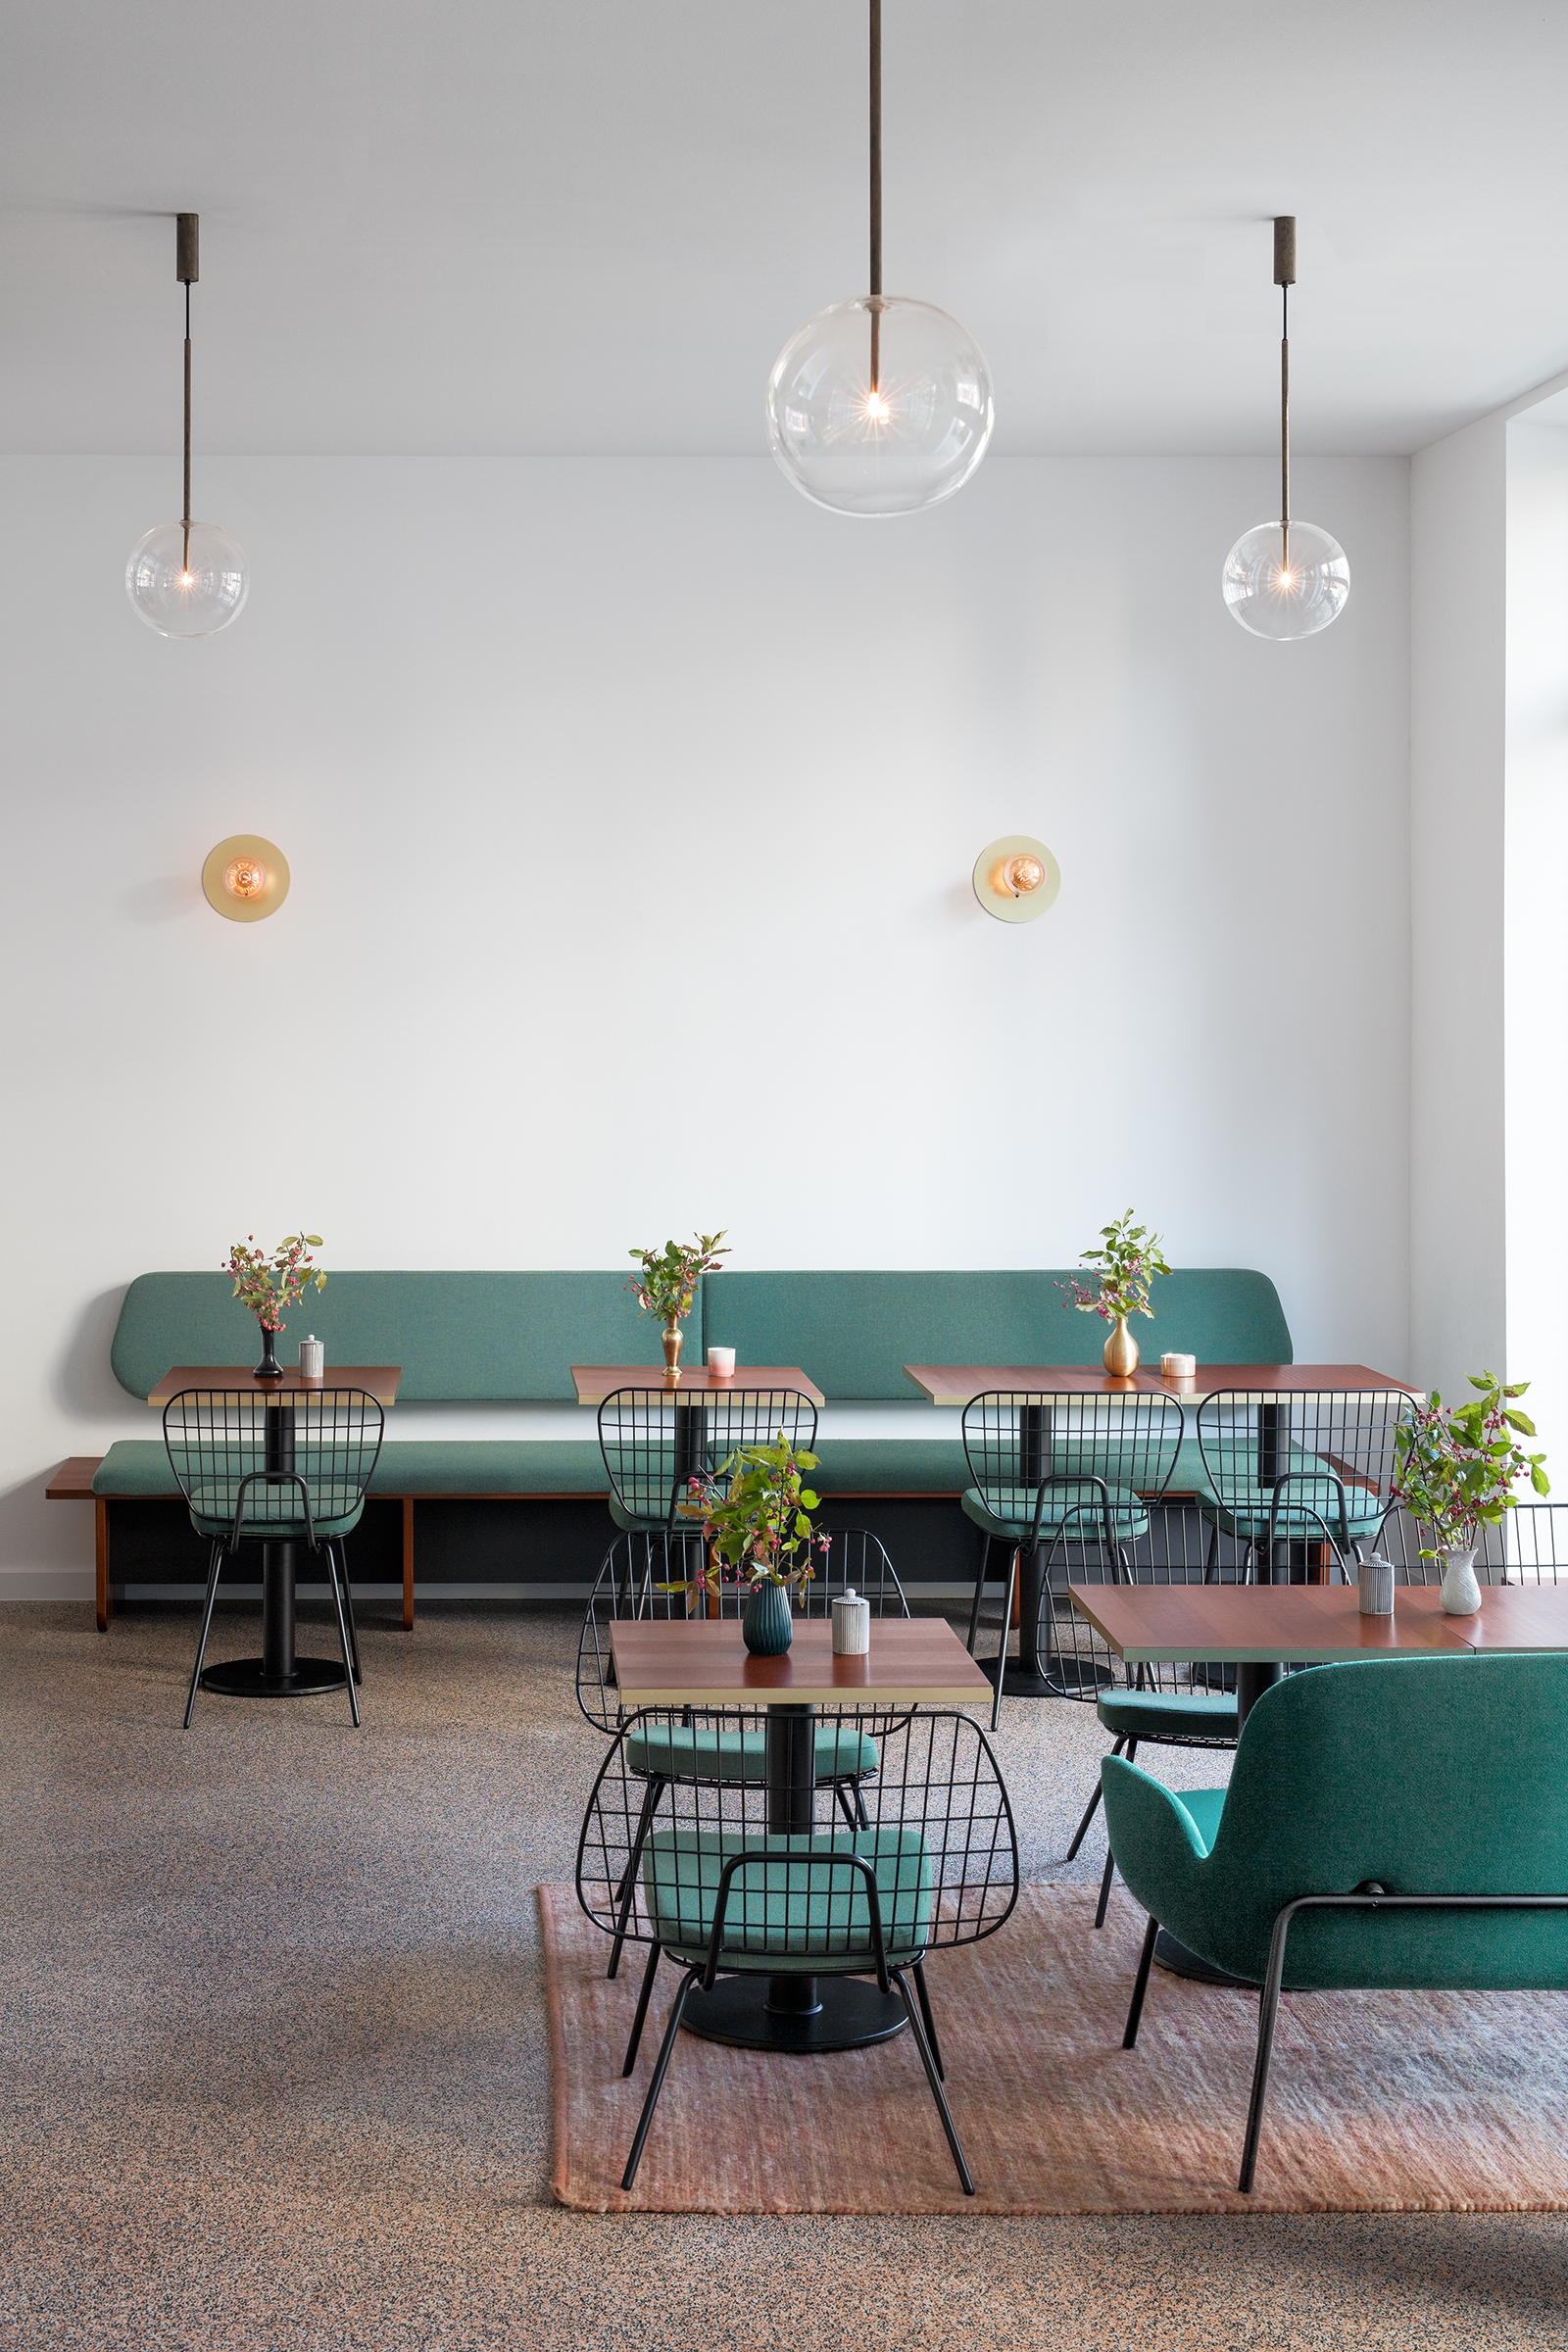 图片[4]|Liebes Bisschen Café和Pâtisserie|ART-Arrakis | 建筑室内设计的创新与灵感